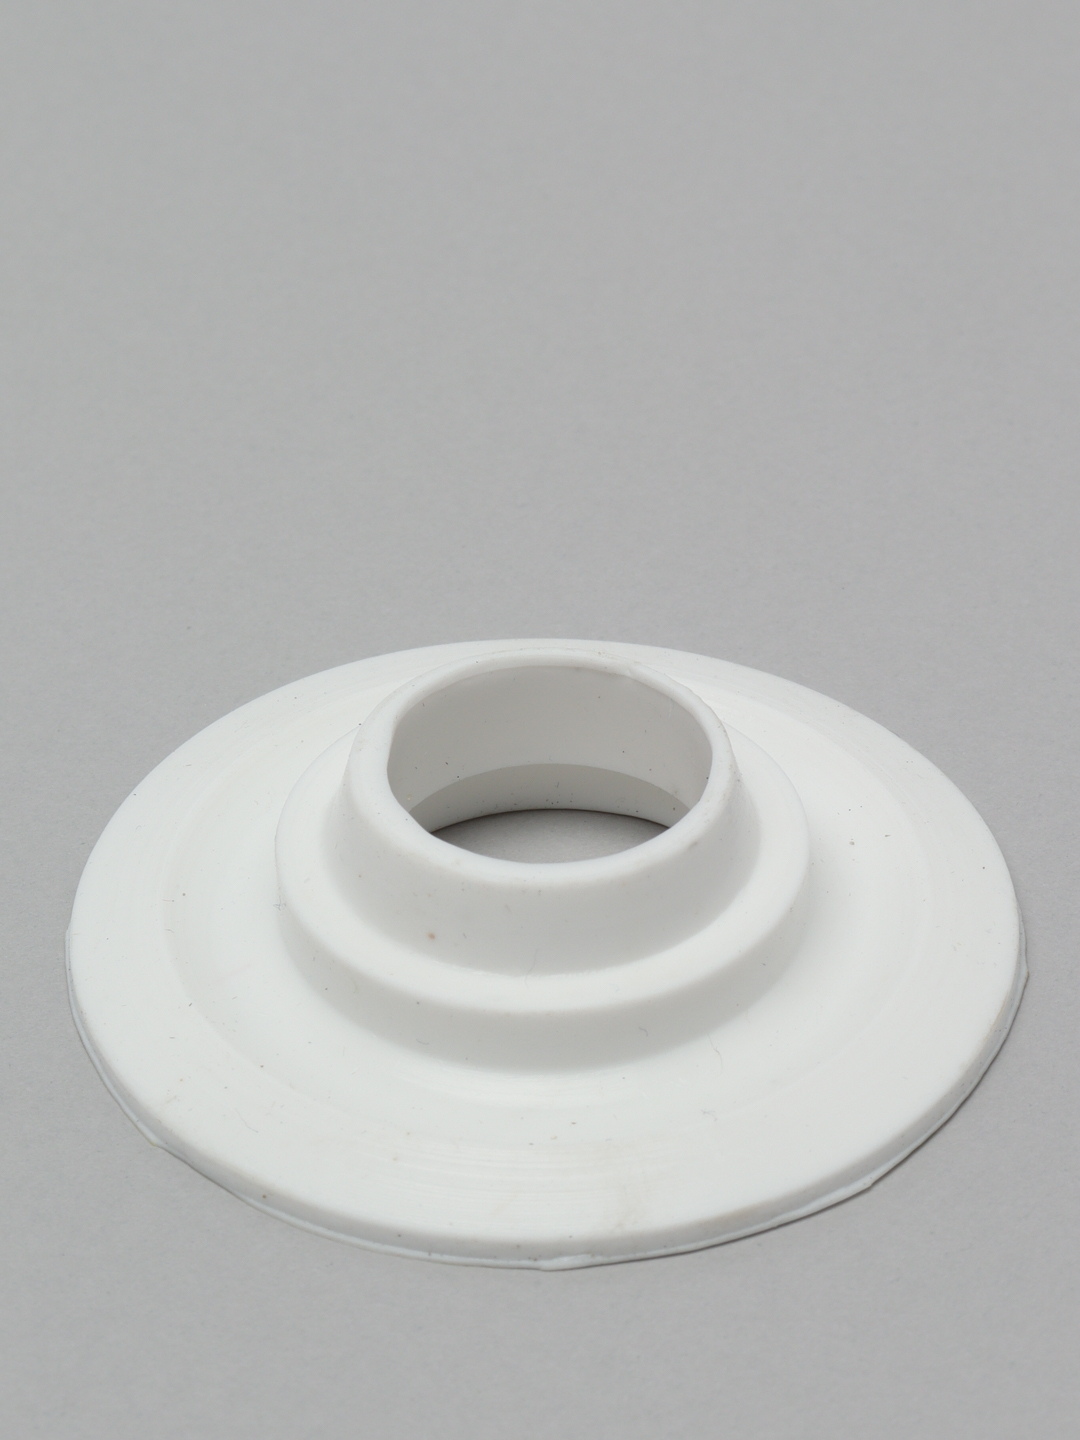 Мембрана запорная для сливного клапана бачка унитаза, фигурная, силикон .